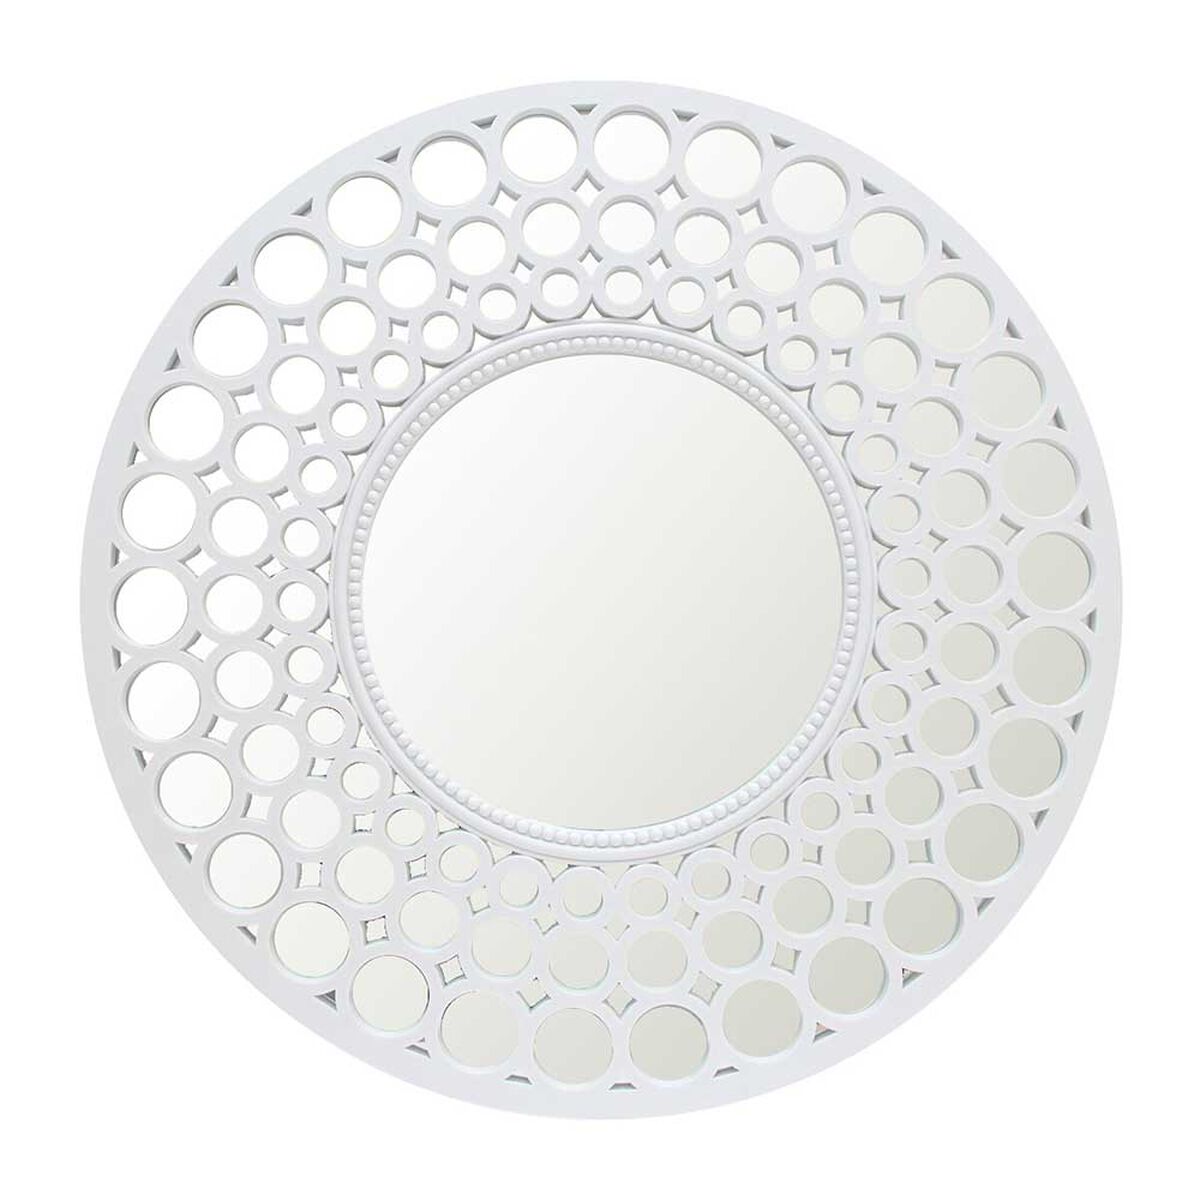 Espejo Plástico Vgo Circular 63 cm Blanco